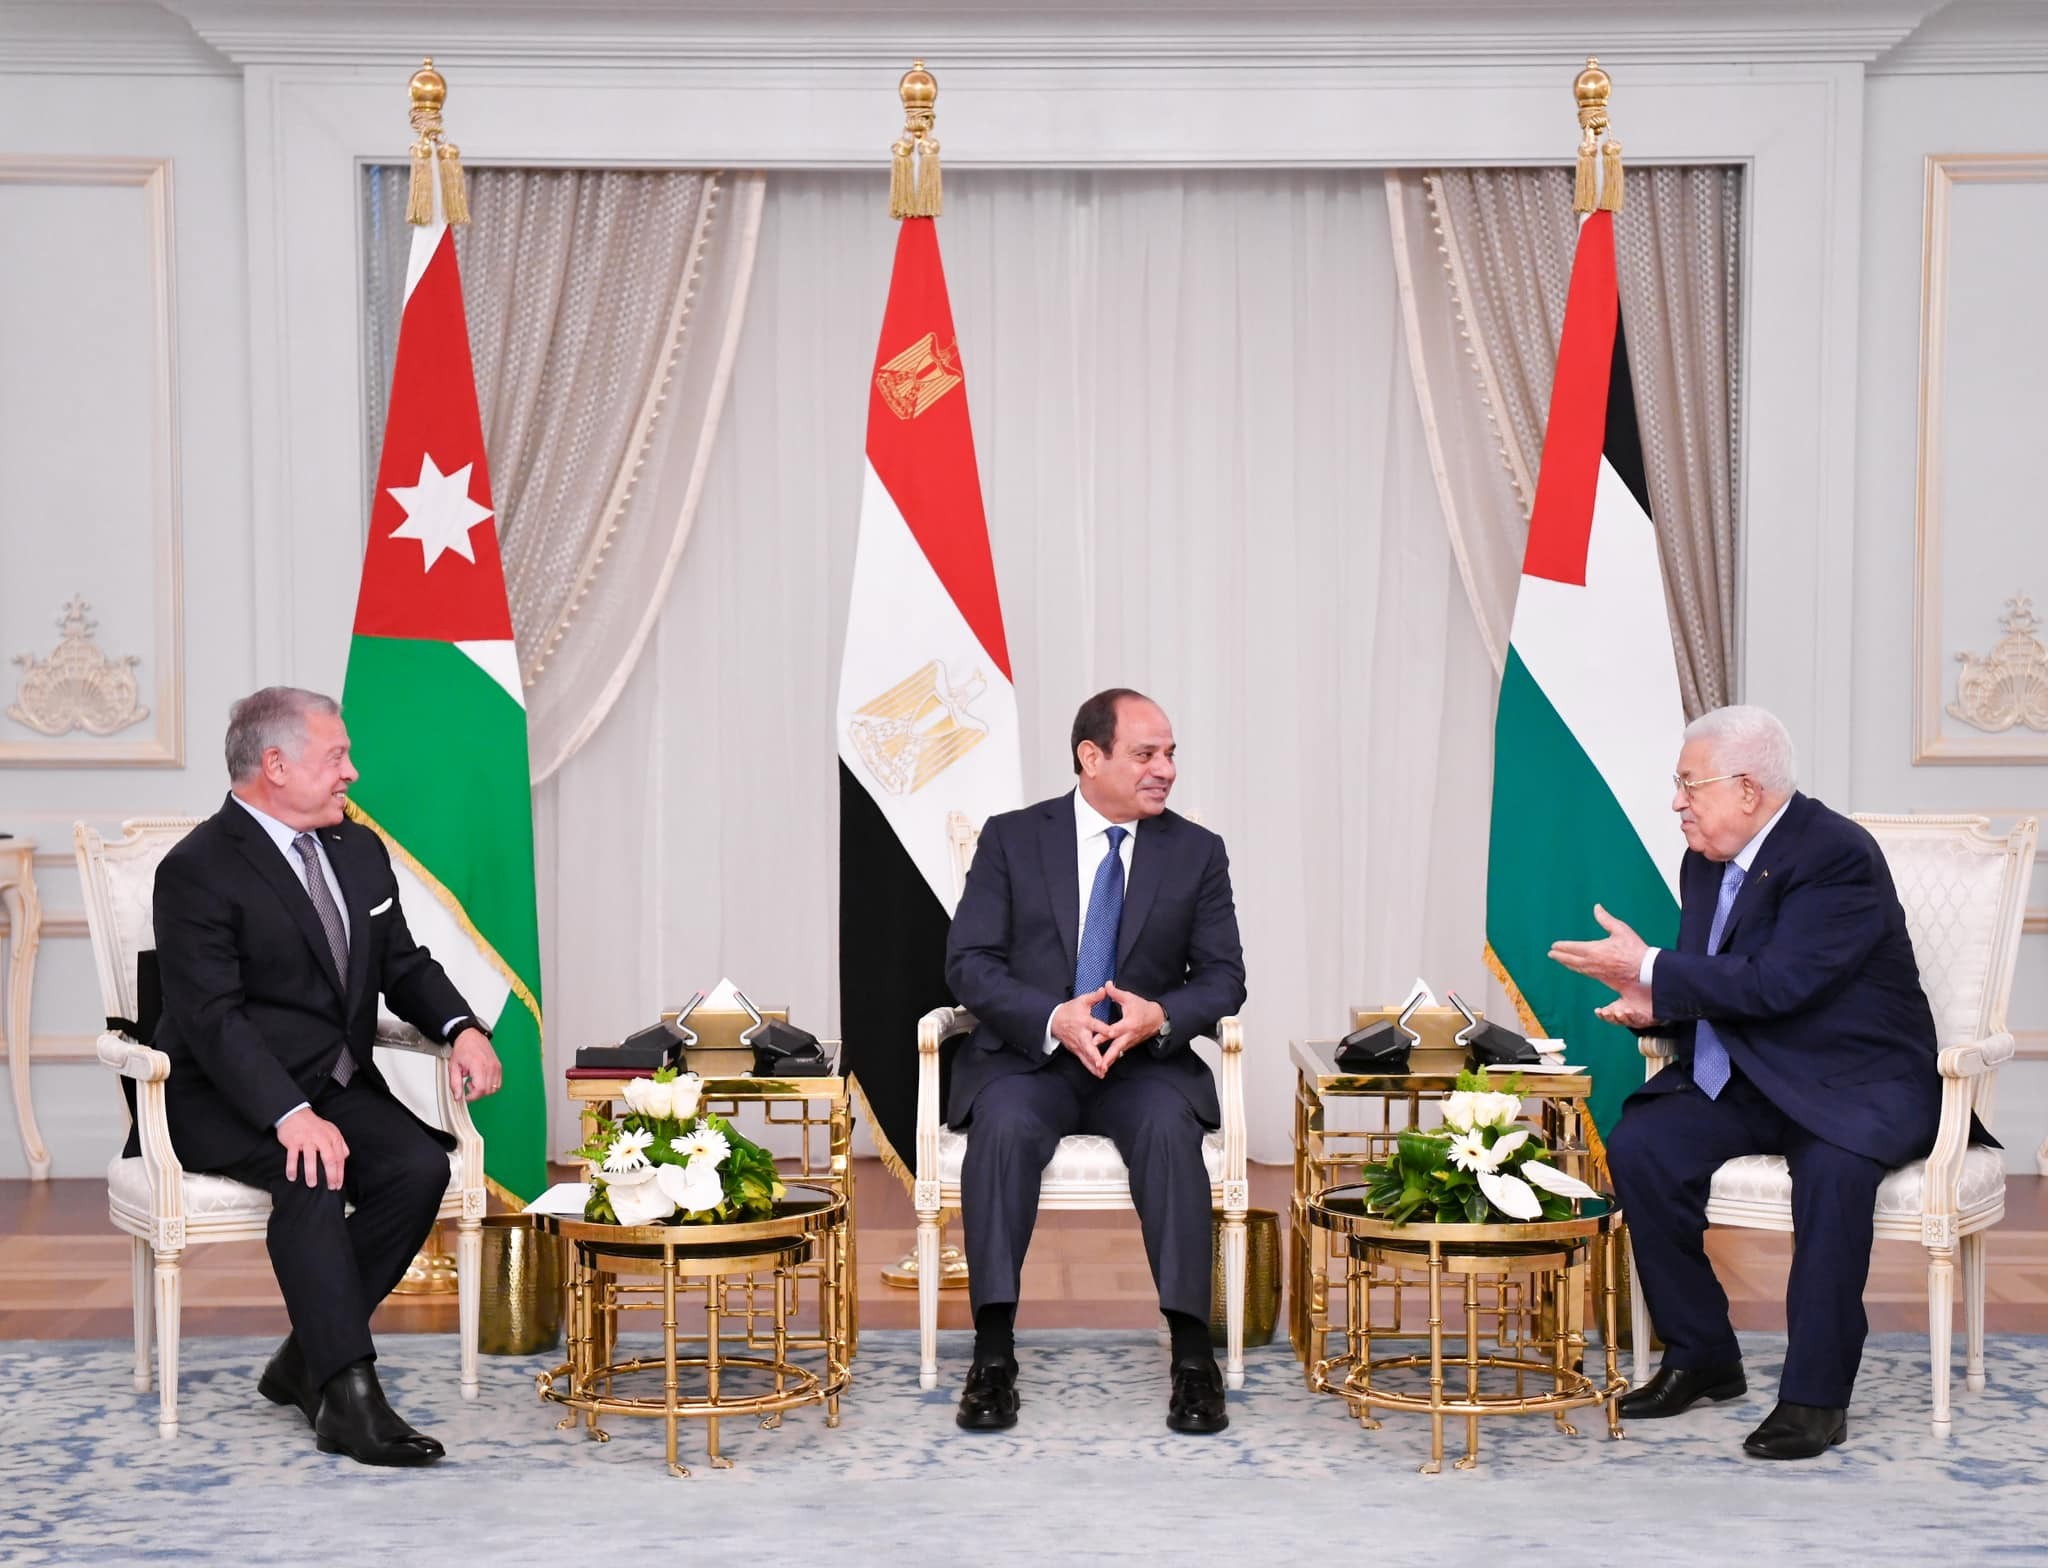 بالصور: تفاصيل البيان الختامي للقمة الثلاثة المصرية الأردنية الفلسطينية